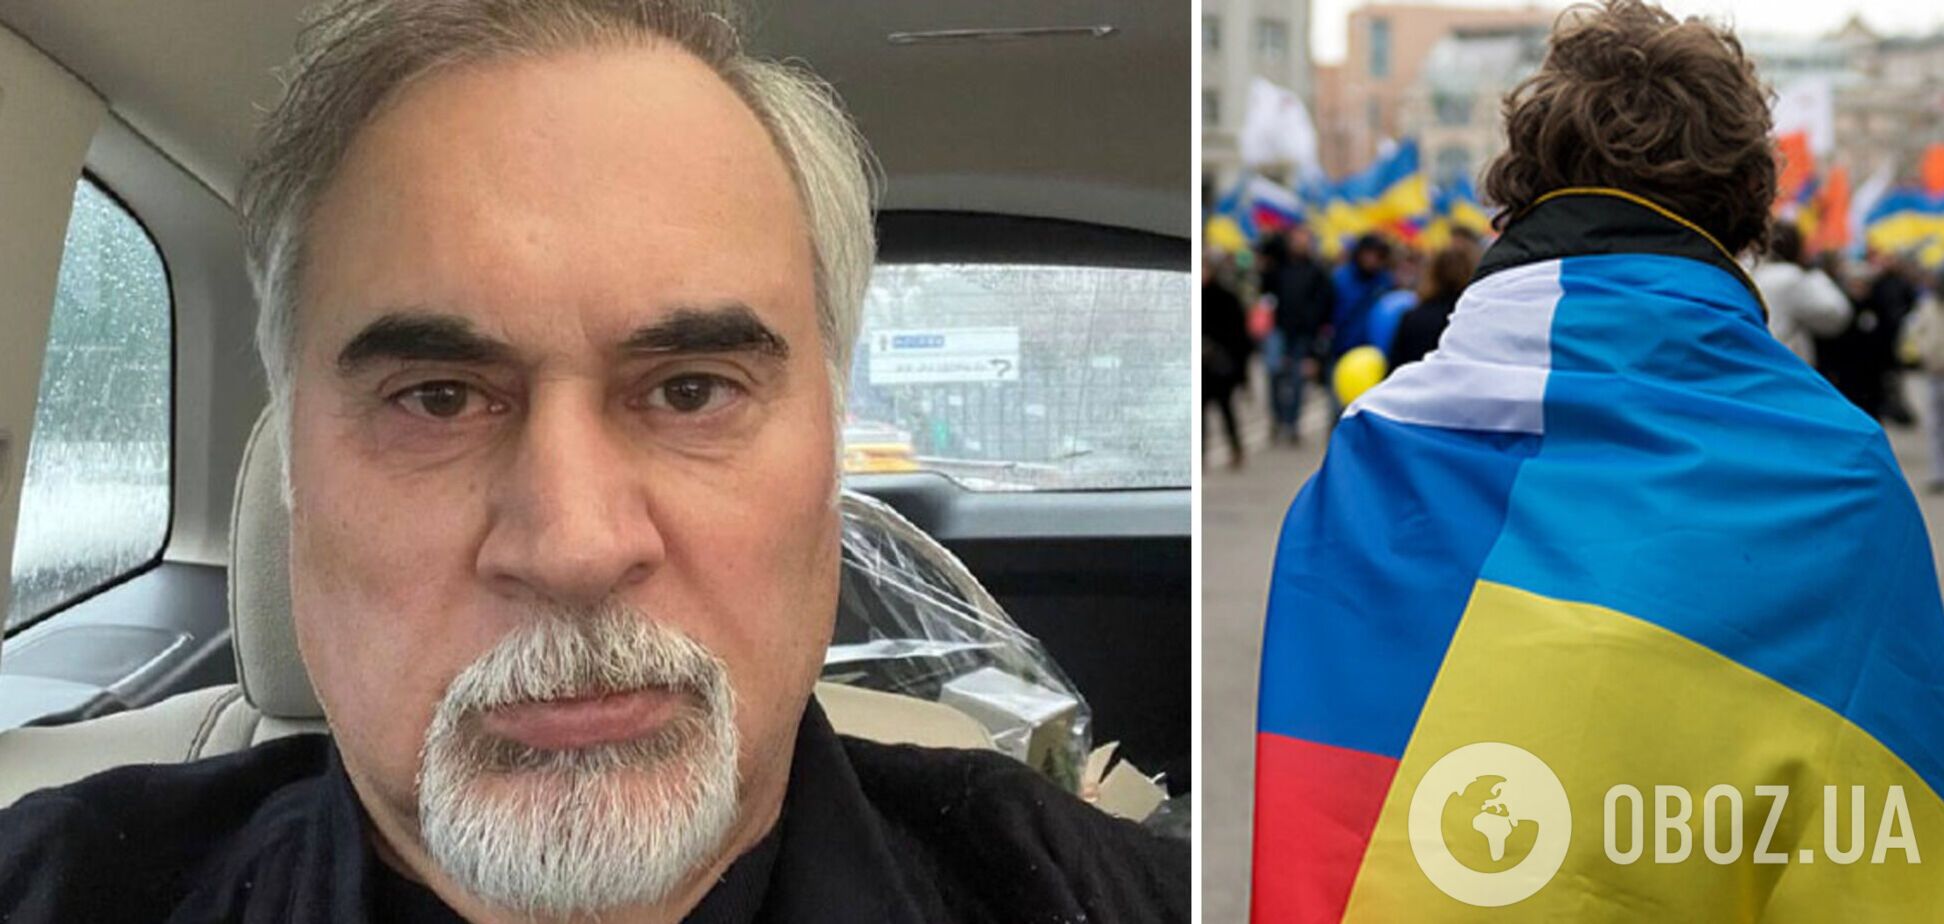 'Не пытаюсь угодить': Меладзе назвал украинцев и россиян 'близкими народами' после обвинения в предательстве